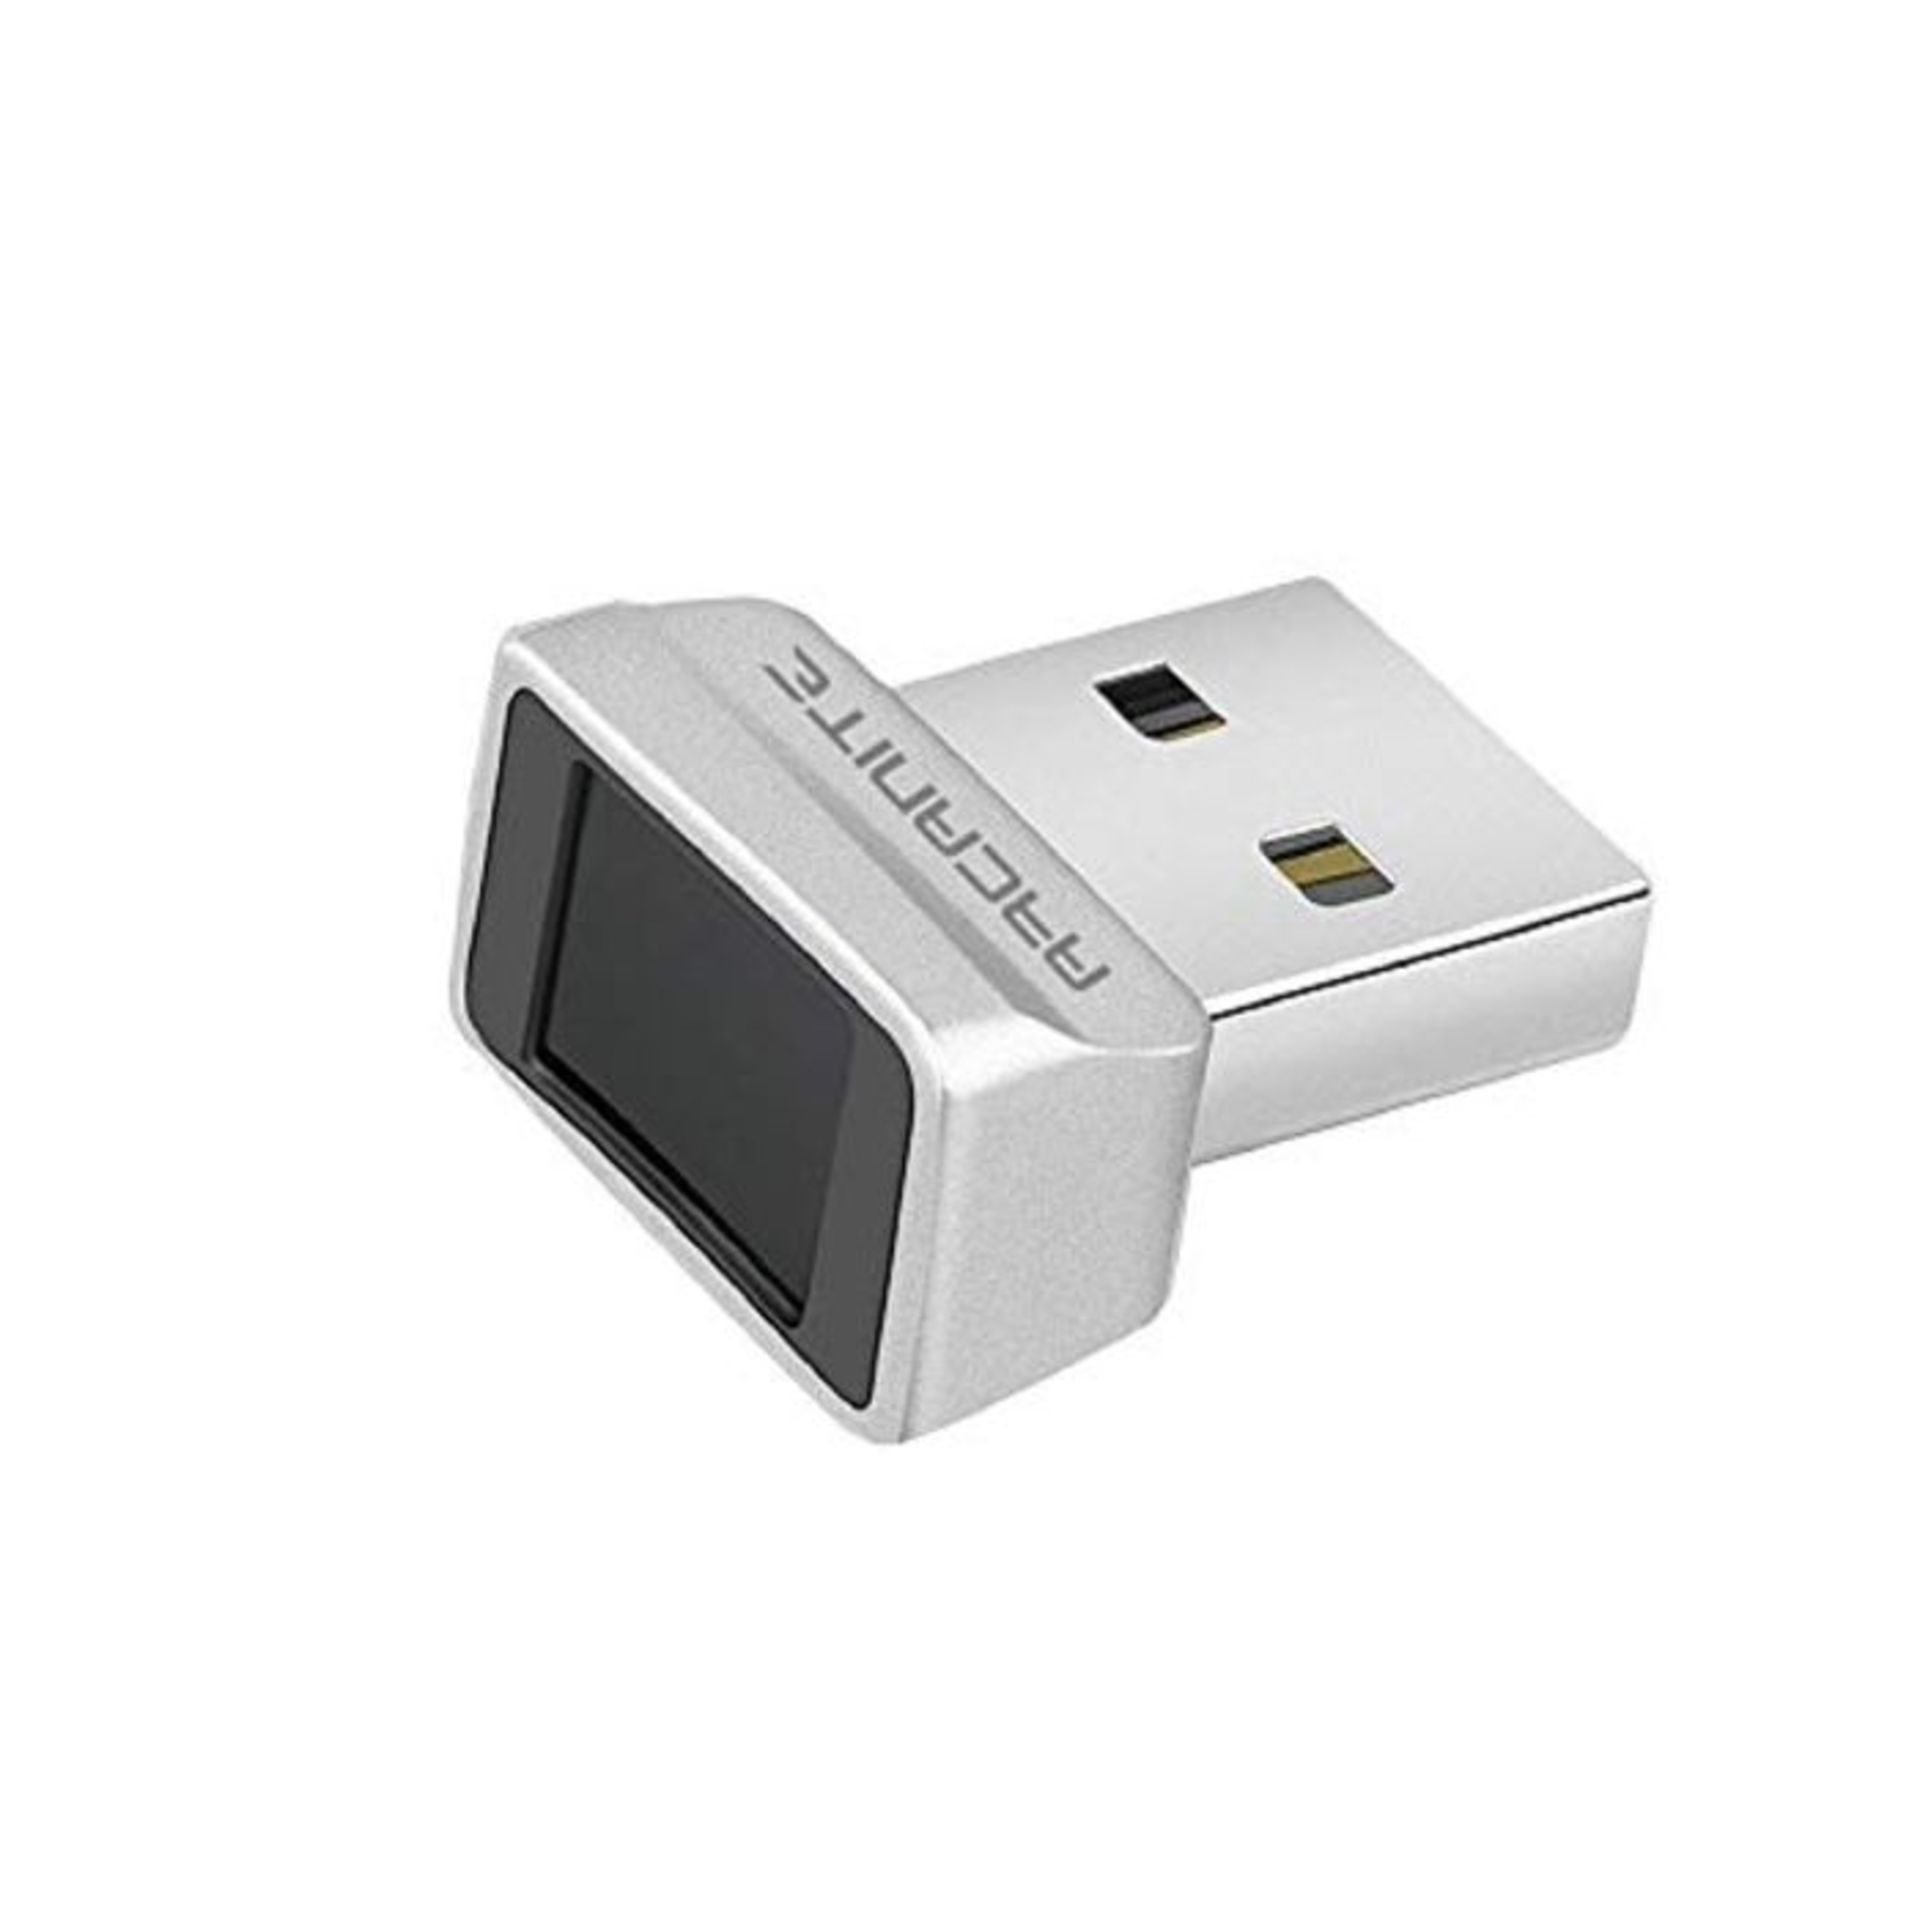 ARCANITE USB Fingerabdruckleser fÃ¼r Windows 10 Hello; 0,05 Sek., 360-Grad-Sensor-Si